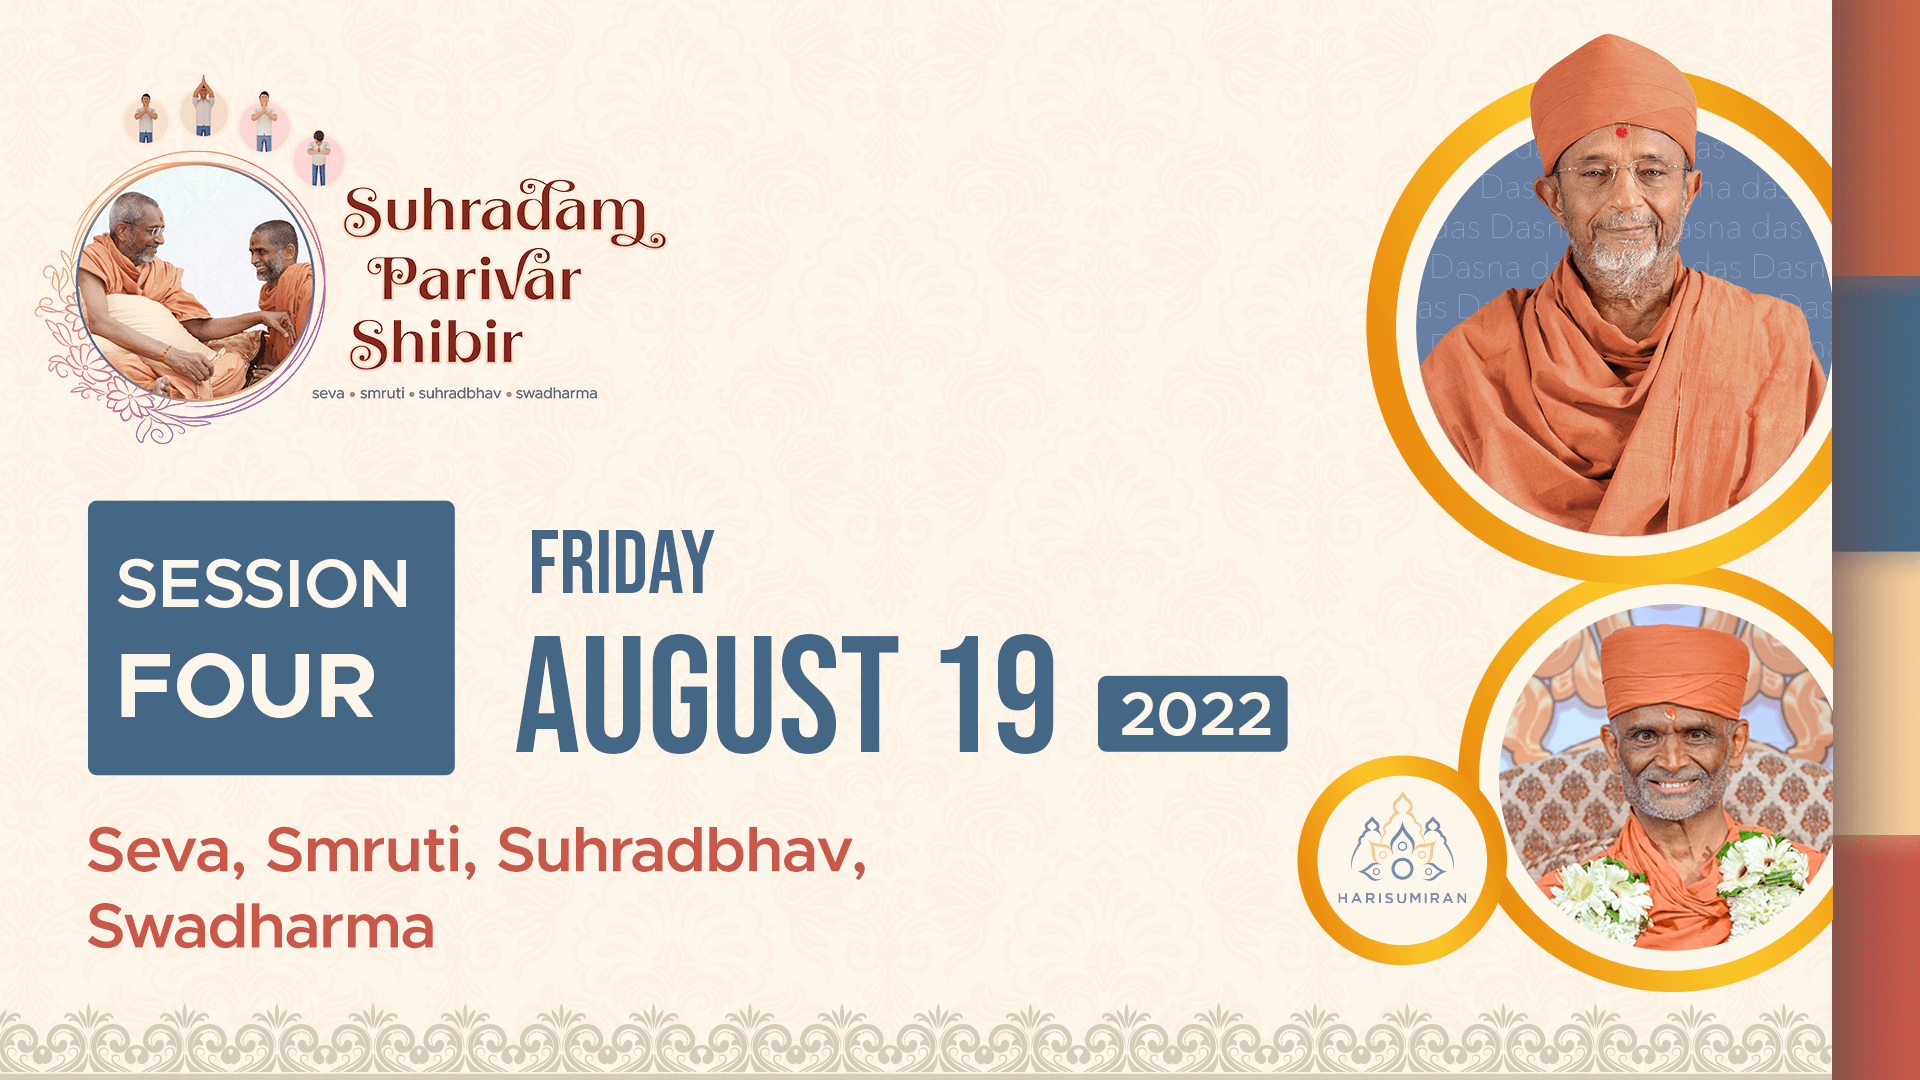 Suhradam Parivar Shibir 2022 | Session 4